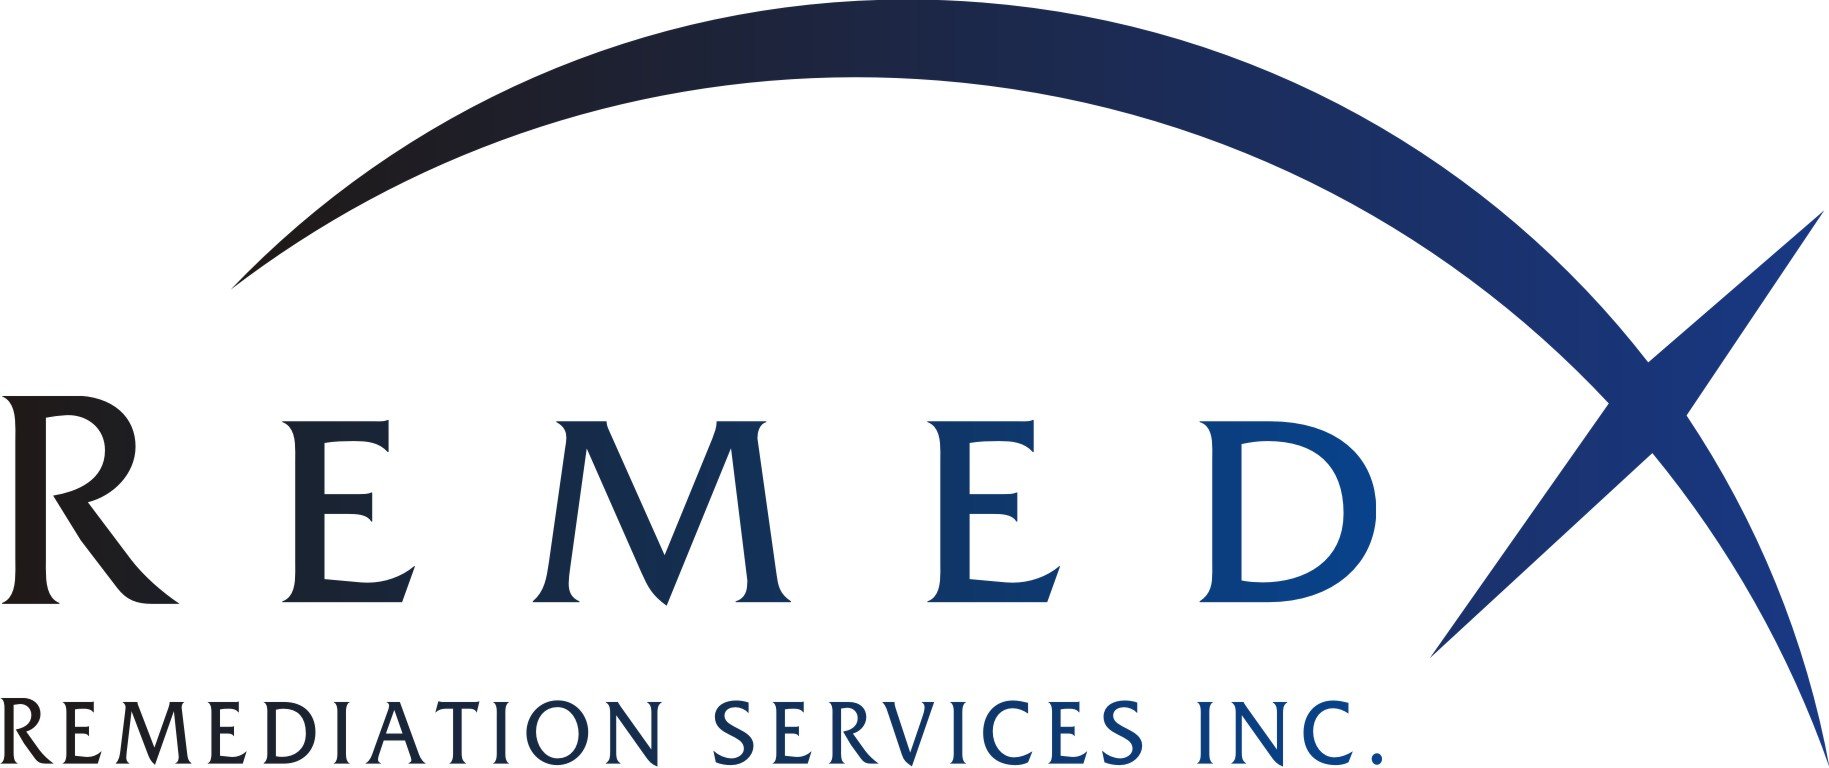 Remedx Logo Grad.jpg